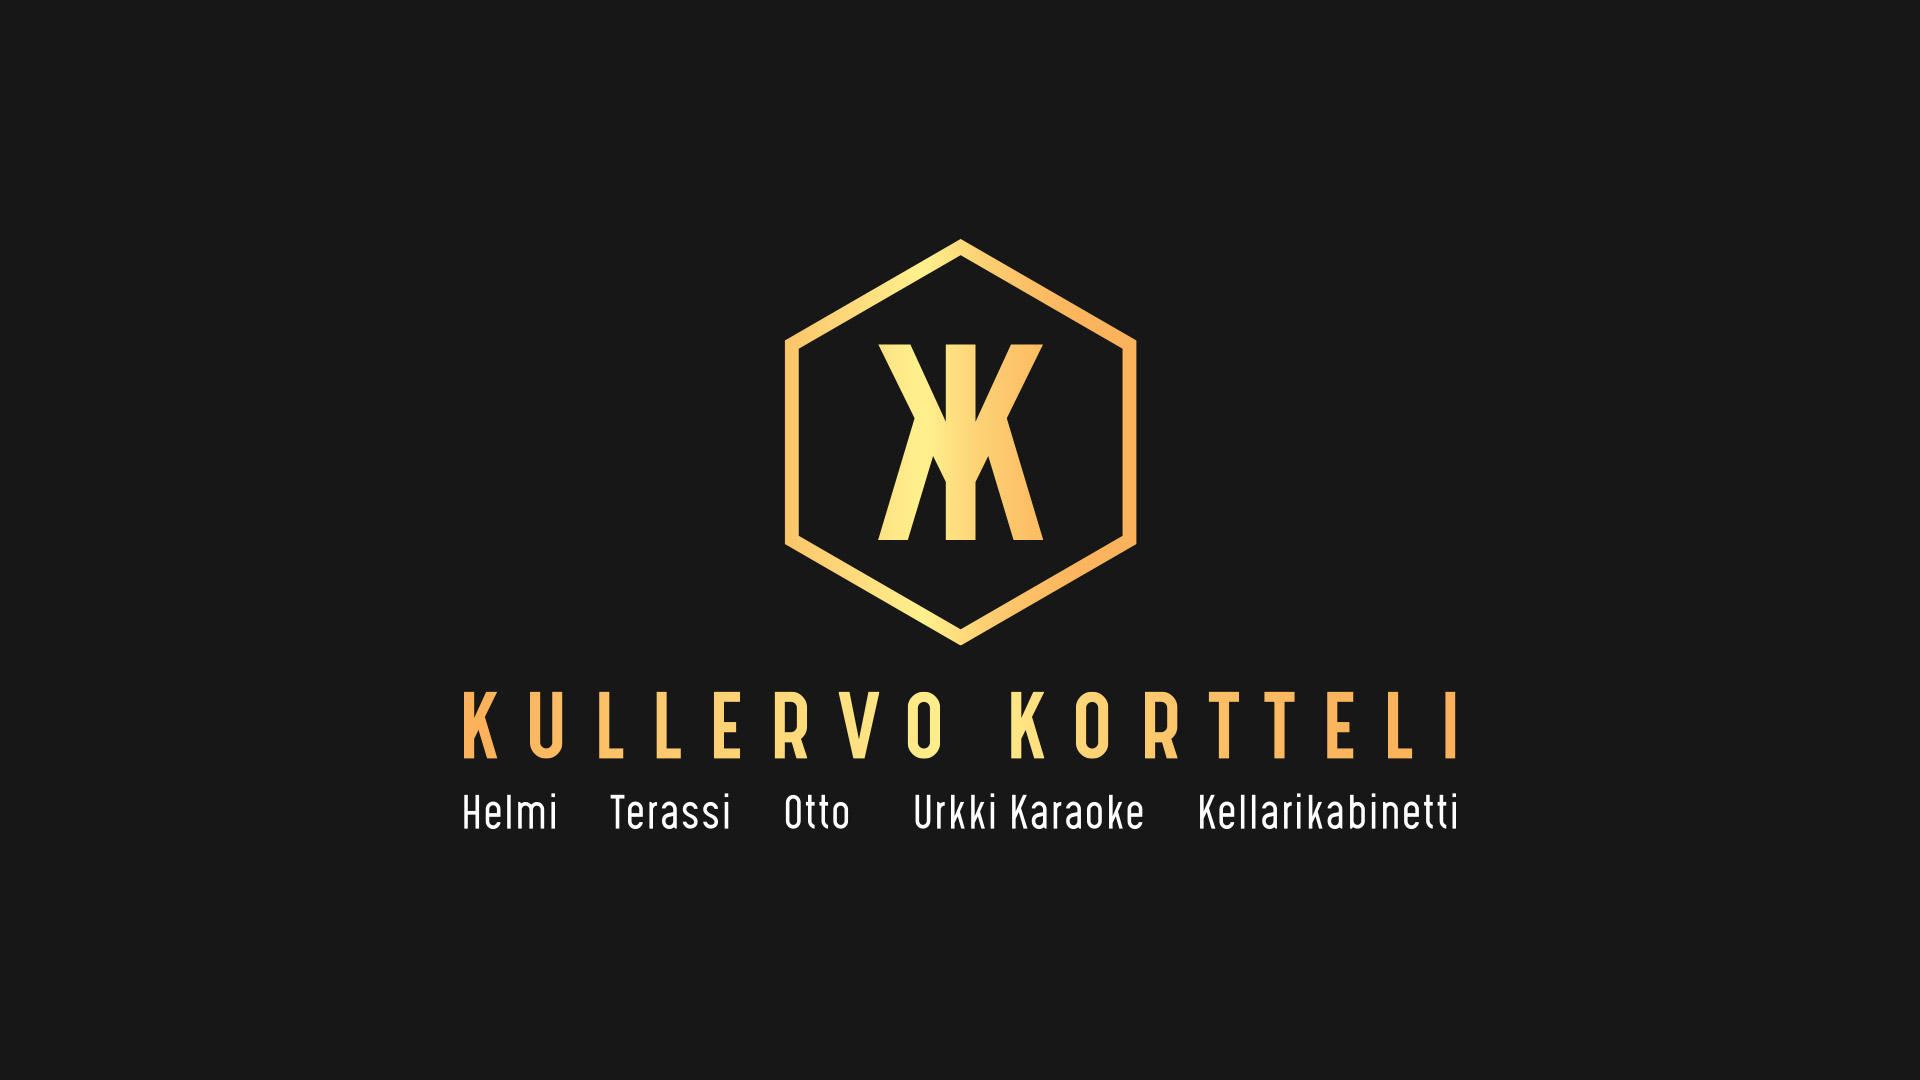 Kullervo Korttelin logo ja ravintolat listattuna